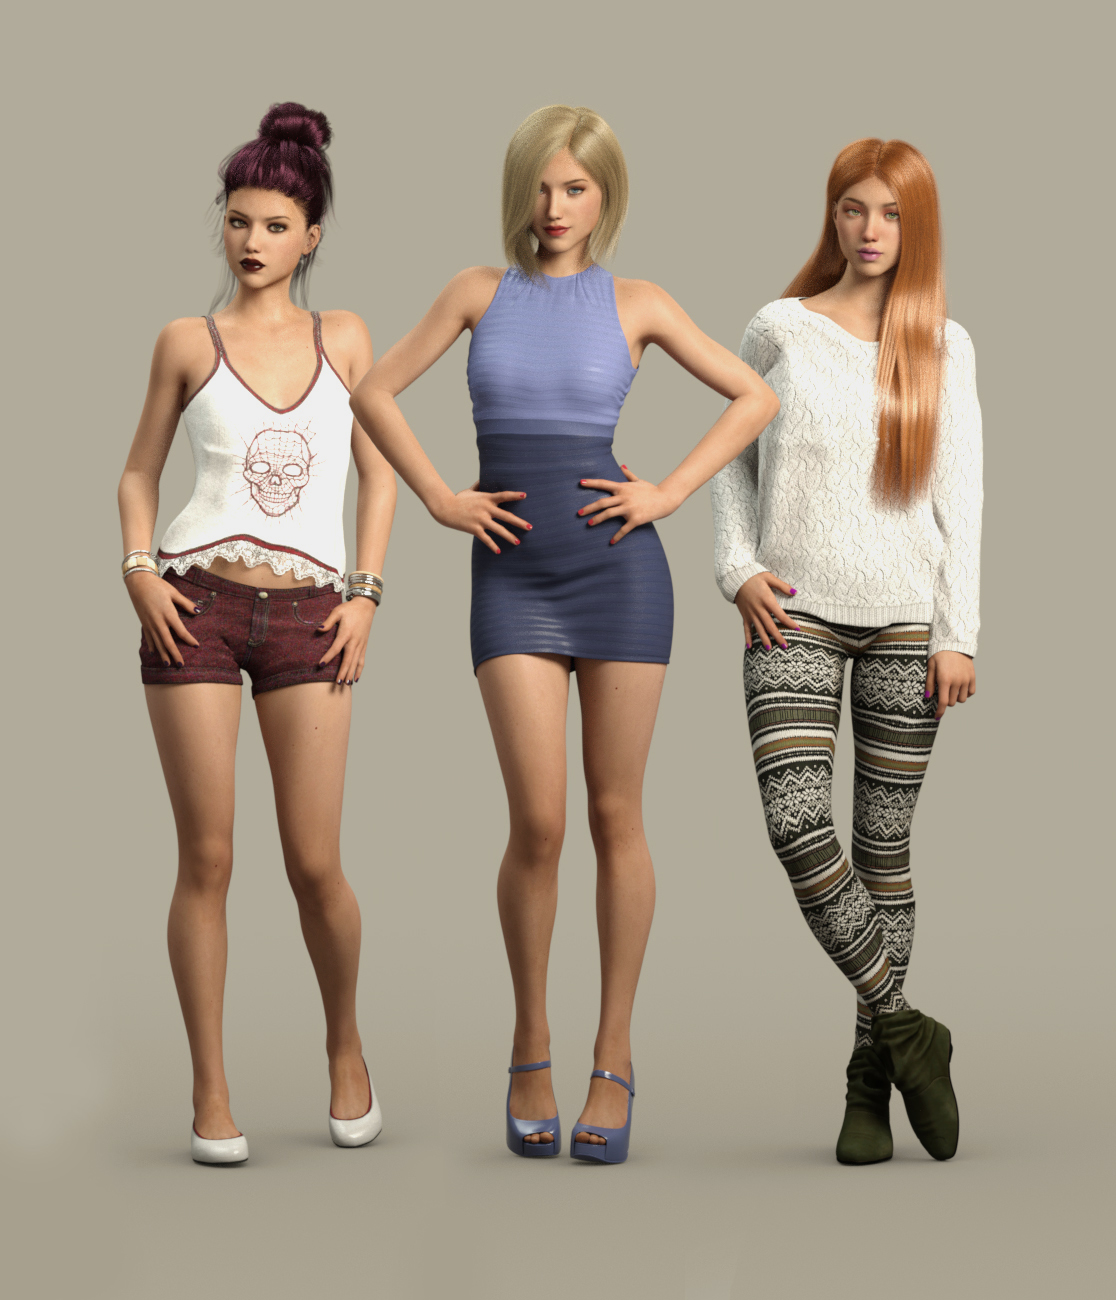 Jane for Genesis 3 Female by: Cherubit, 3D Models by Daz 3D